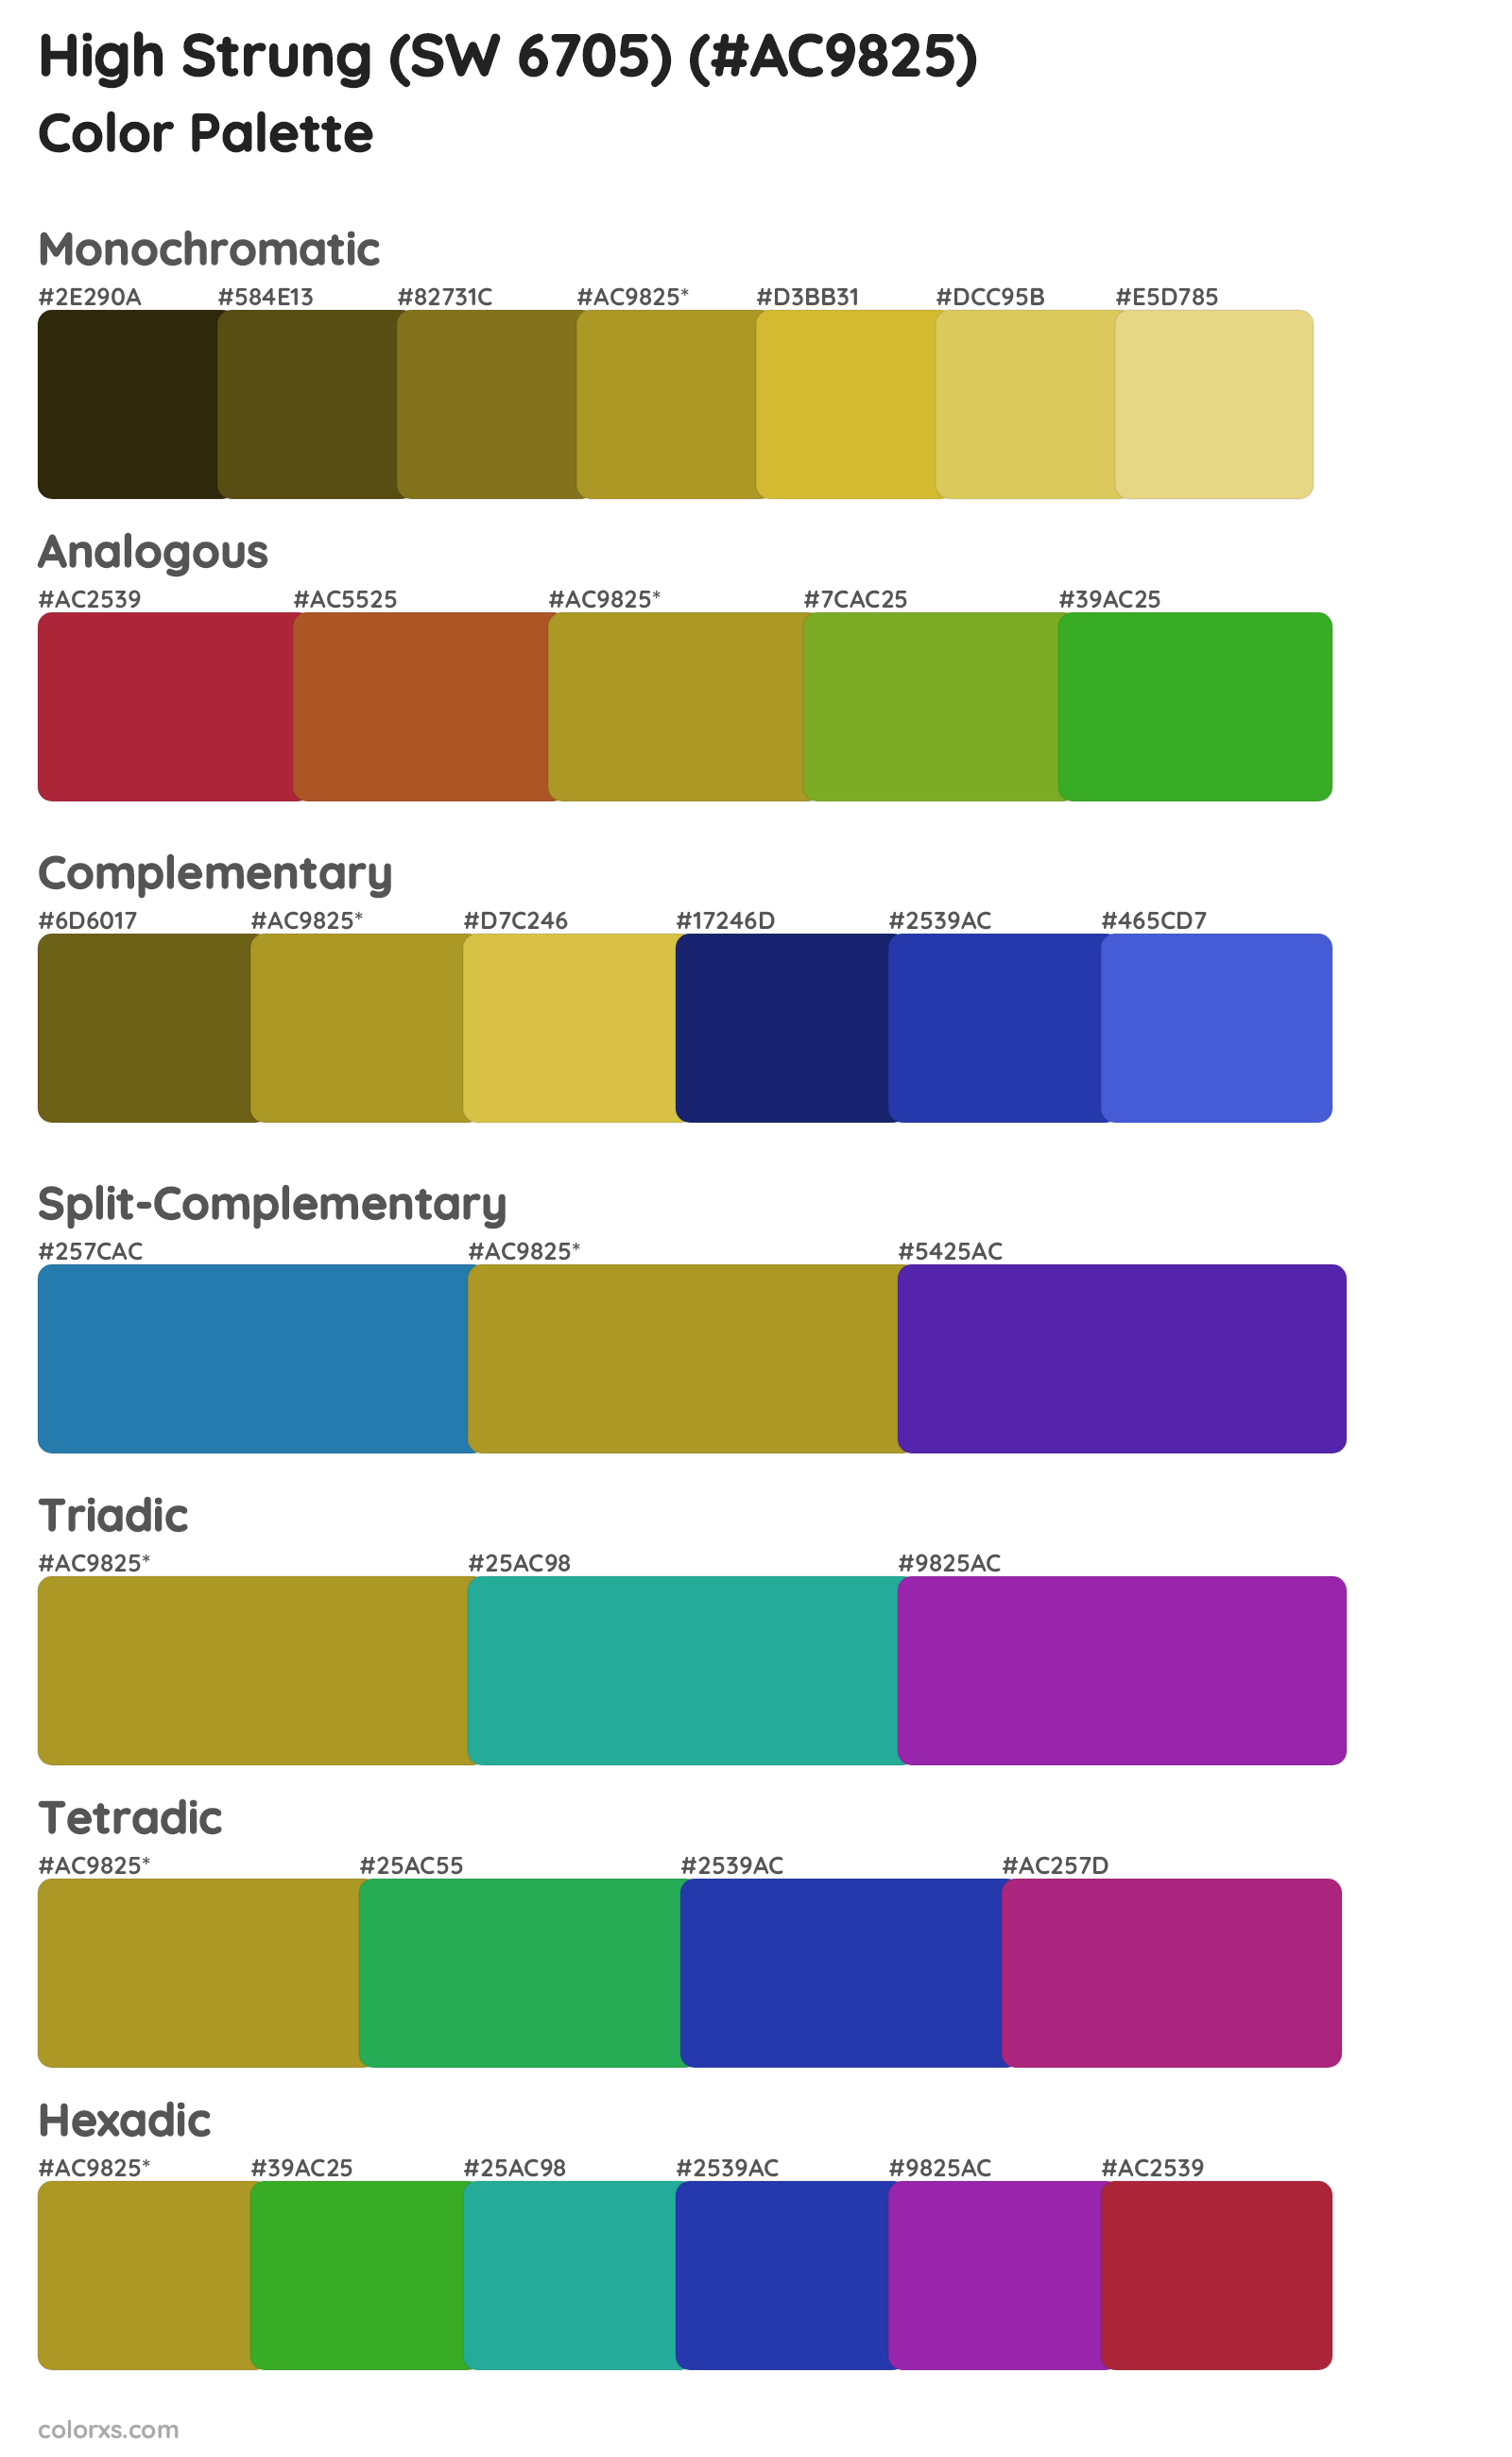 High Strung (SW 6705) Color Scheme Palettes